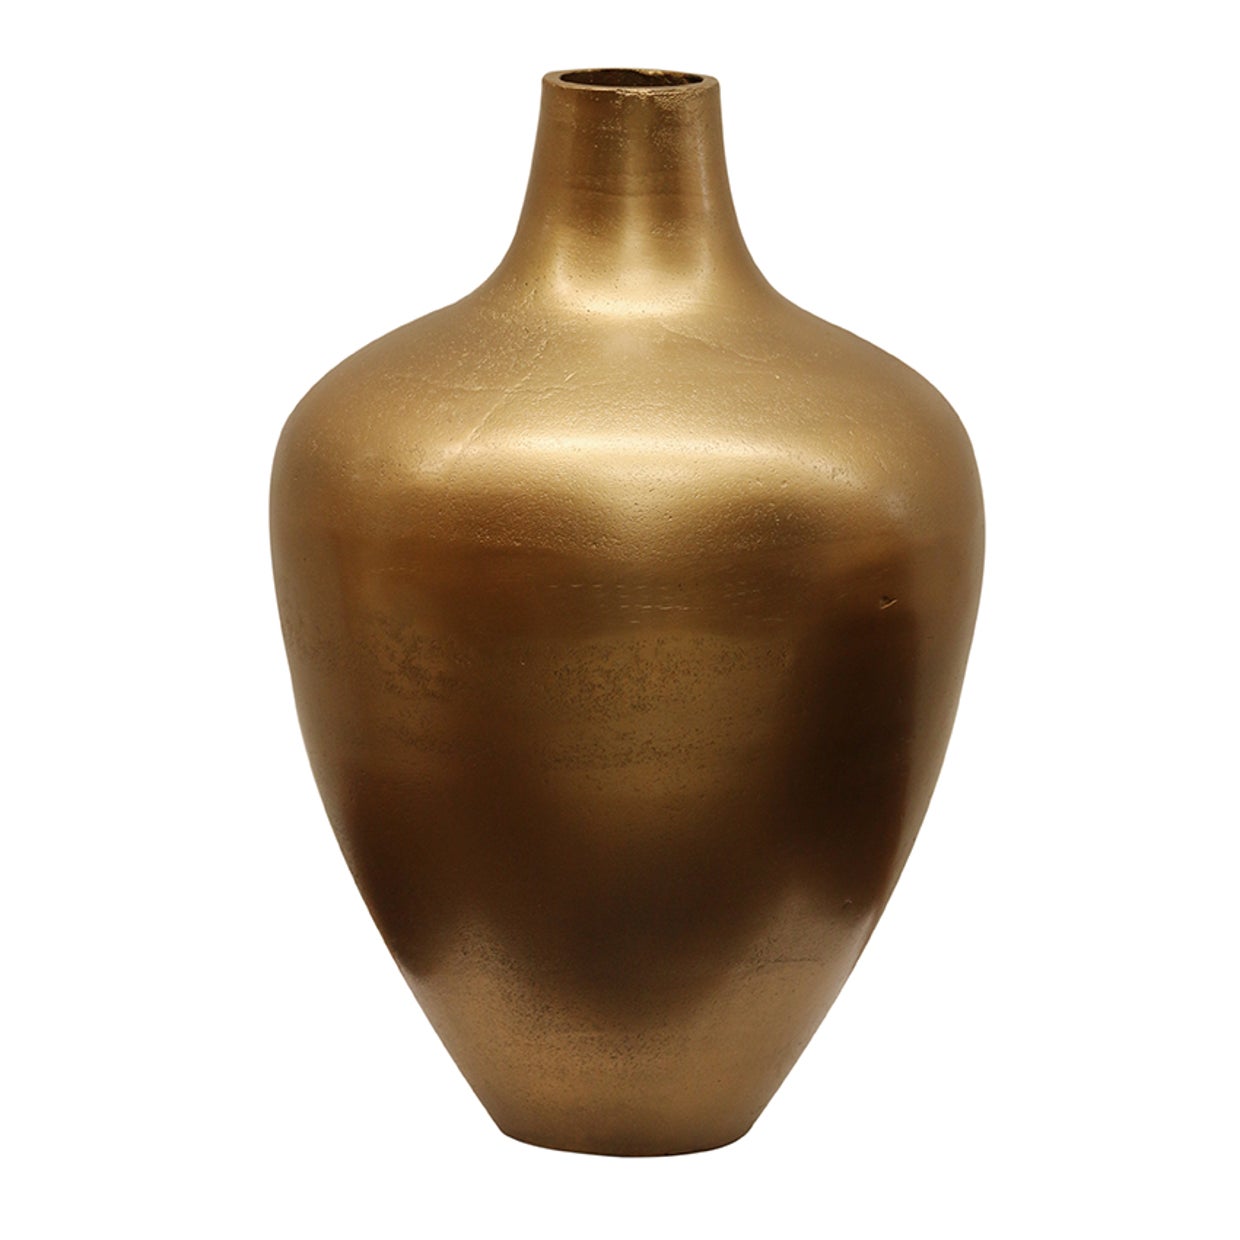 Urn Shape Vase in Brass Antique Finish - Large